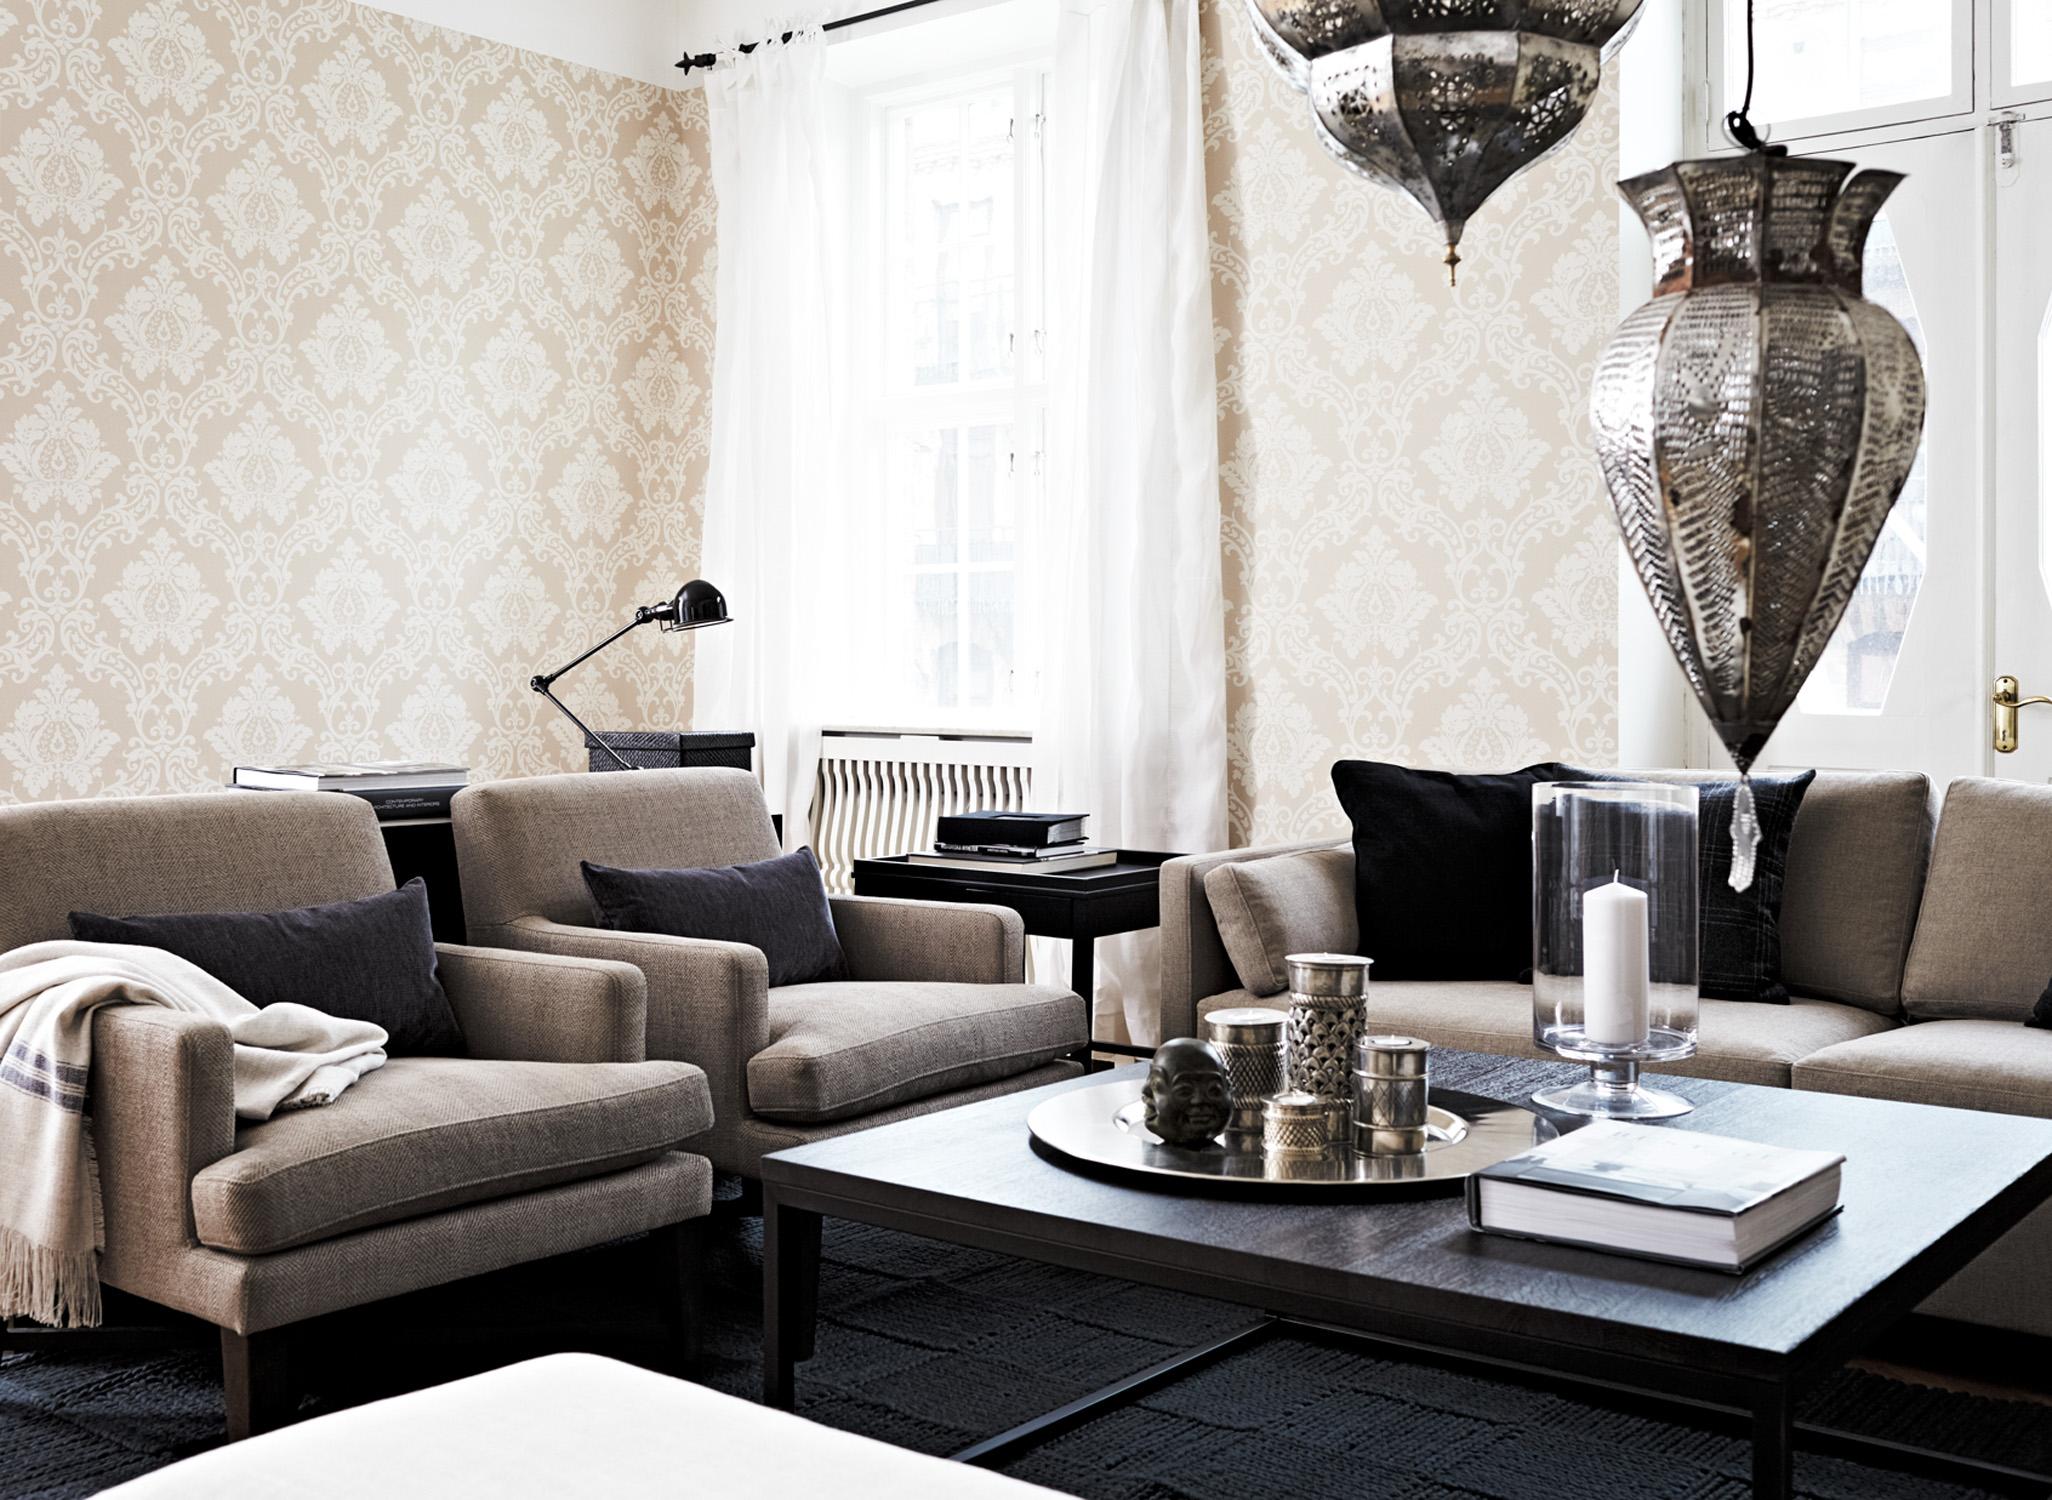 Orientalische Hängeleuchten #teppich #sofa #mustertapete #wohnzimmergestaltung ©Boras Tapeter